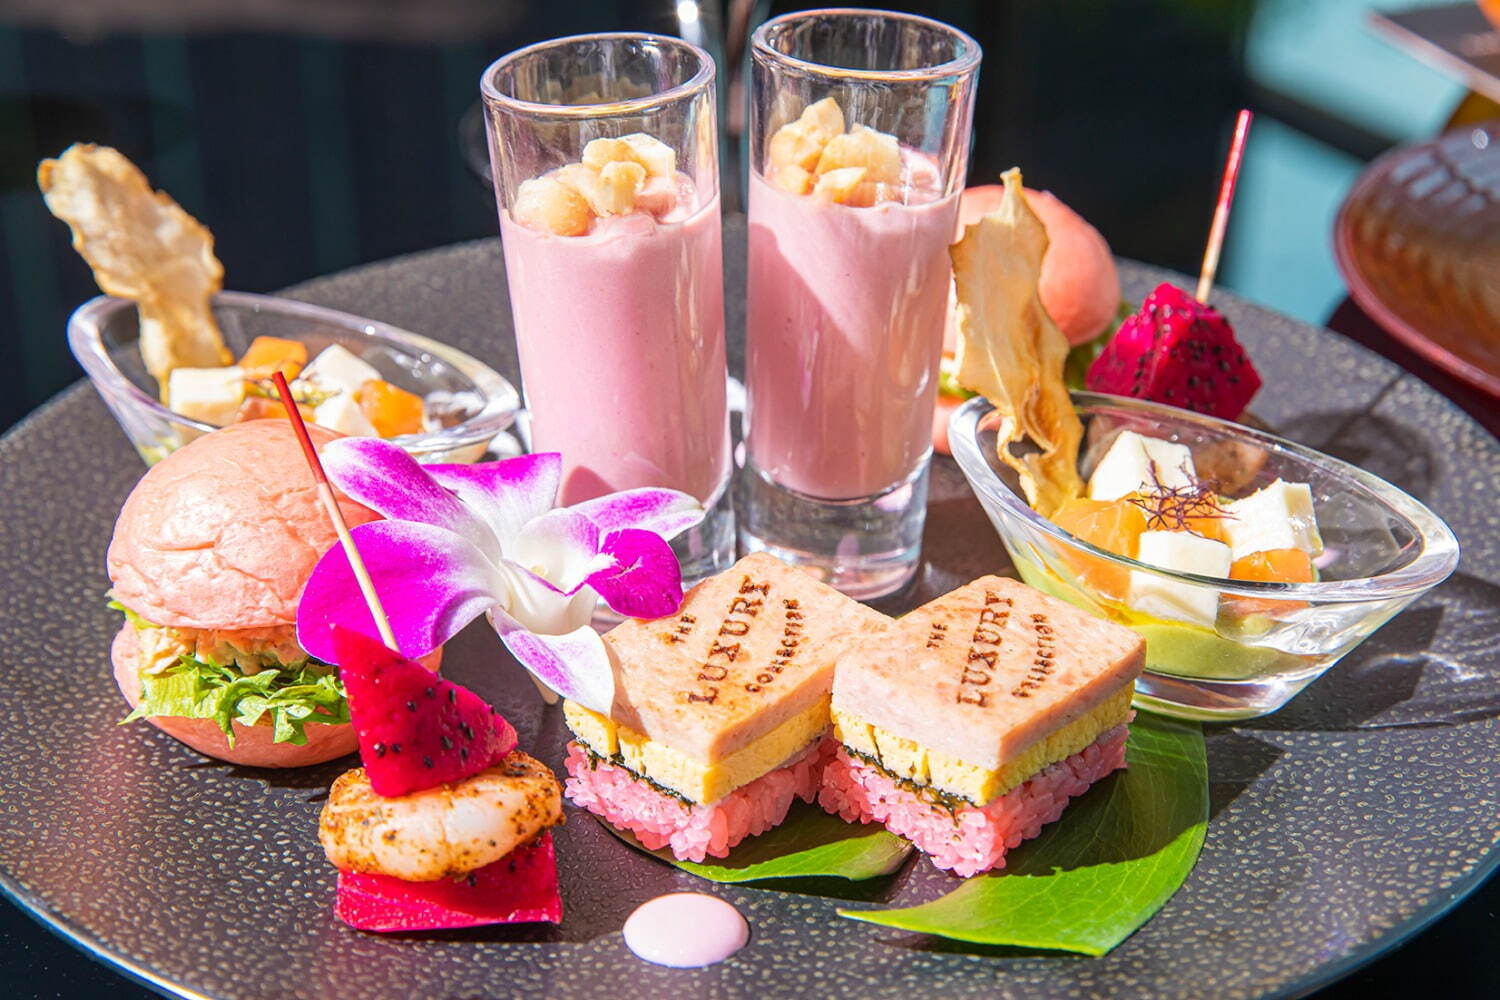 At^k[eB[uPink Palace Afternoon Tea Inspired by The Royal Hawaiian Resortv6,500~